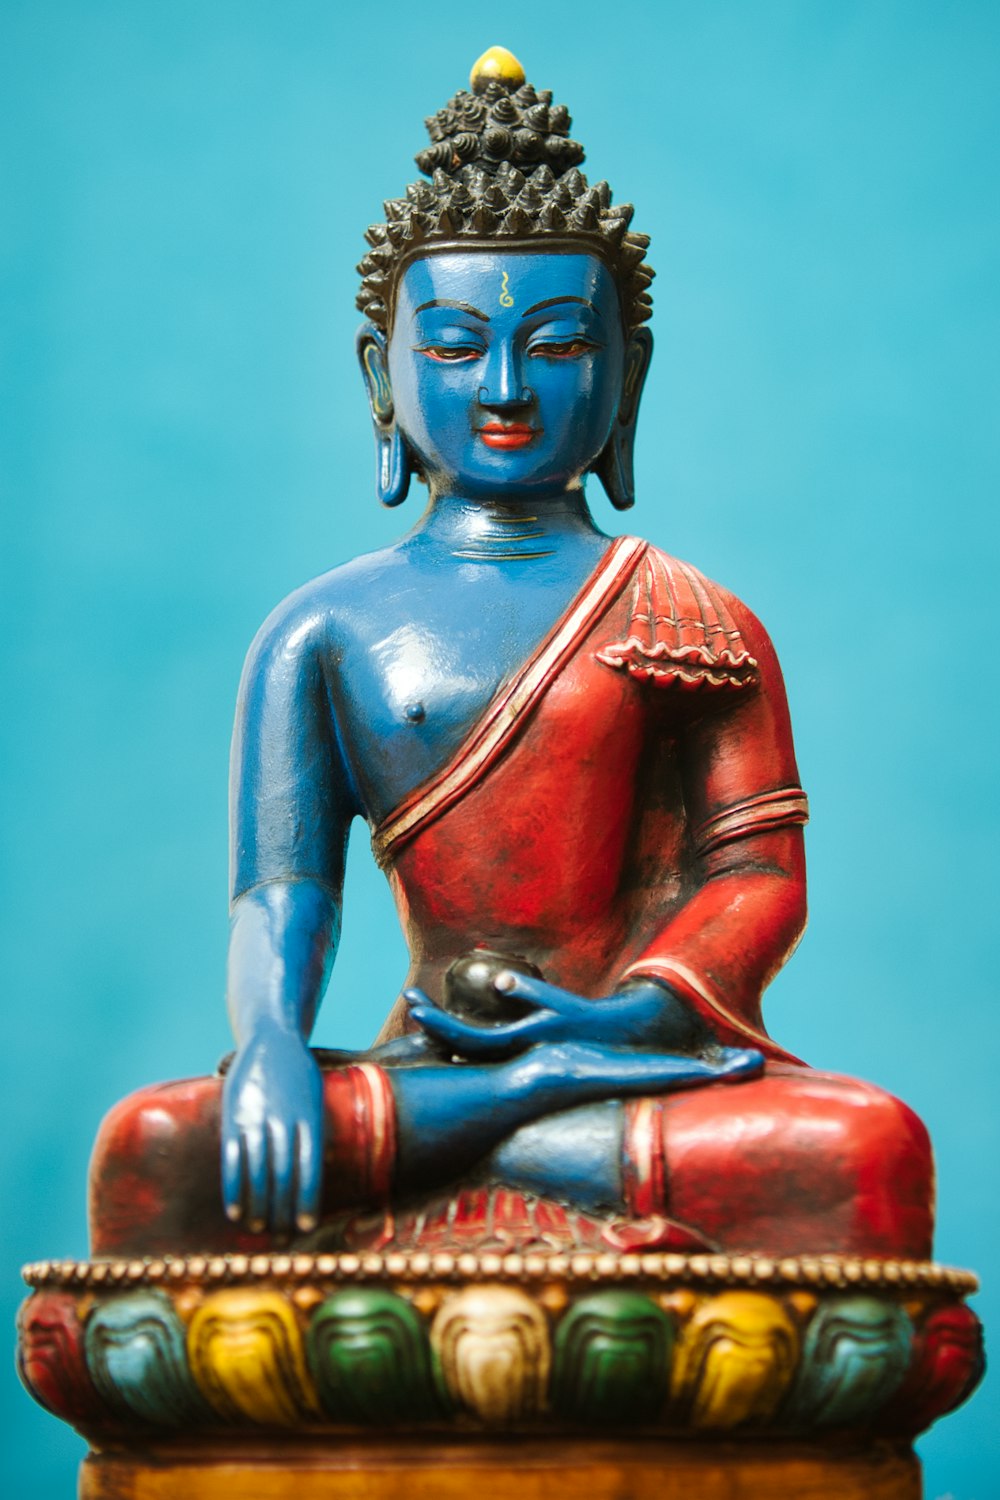 Fotos e imágenes de Buda [HQ] | Descargar fotos gratis en Unsplash